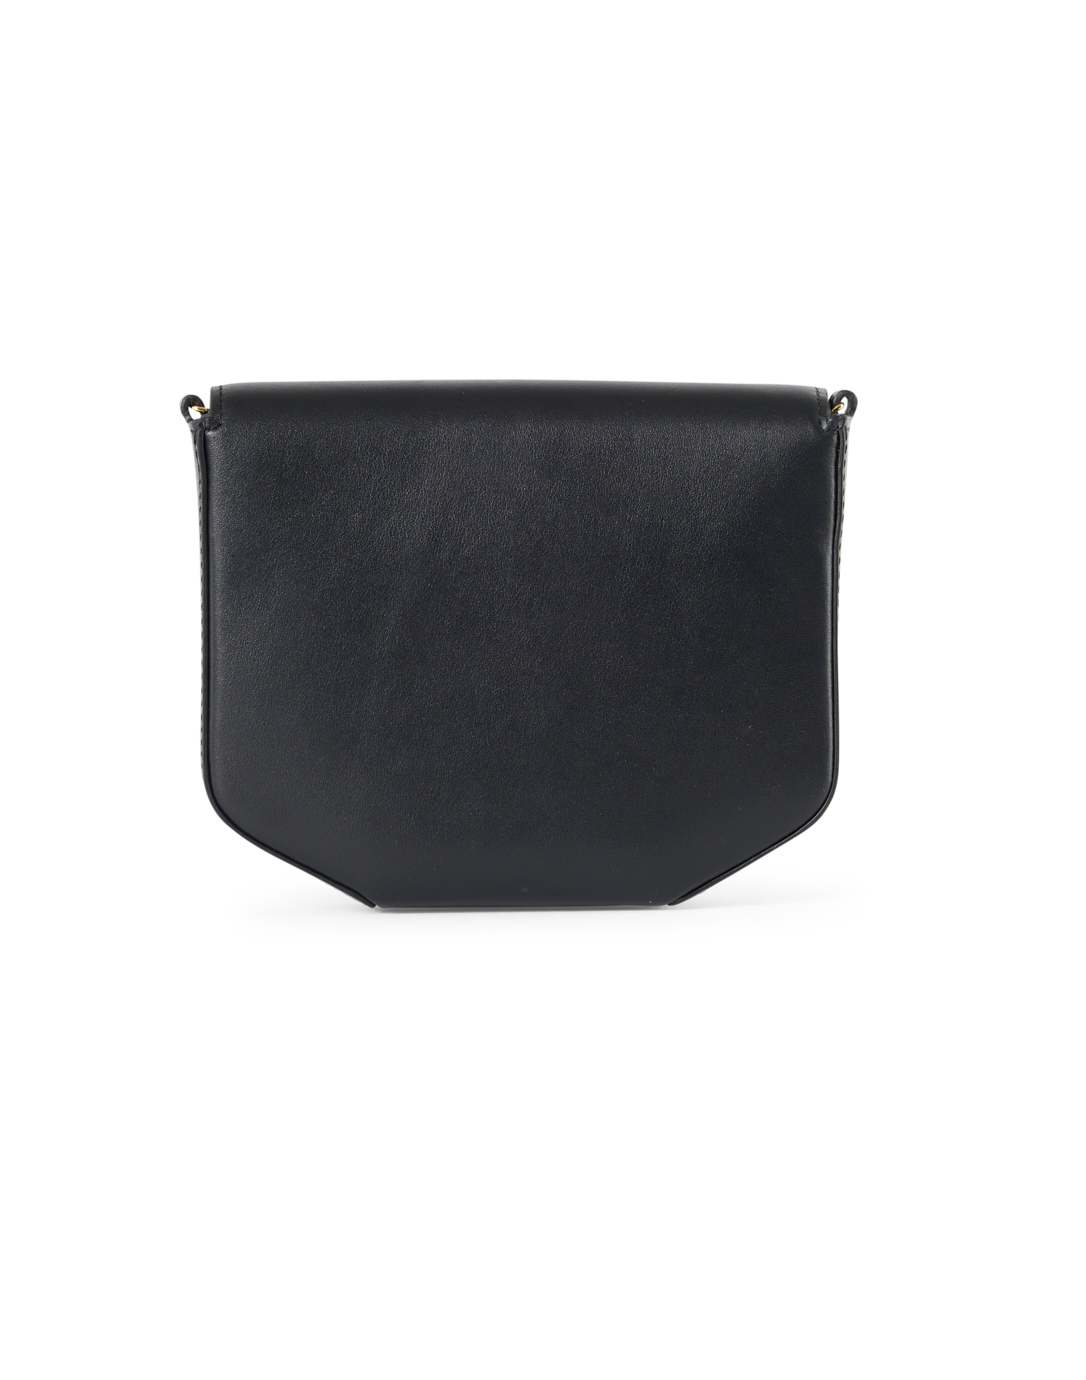 Charles Keith Ladies Casual Metal Buckle Handbag Shoulder Bag Black Up To  60% Off